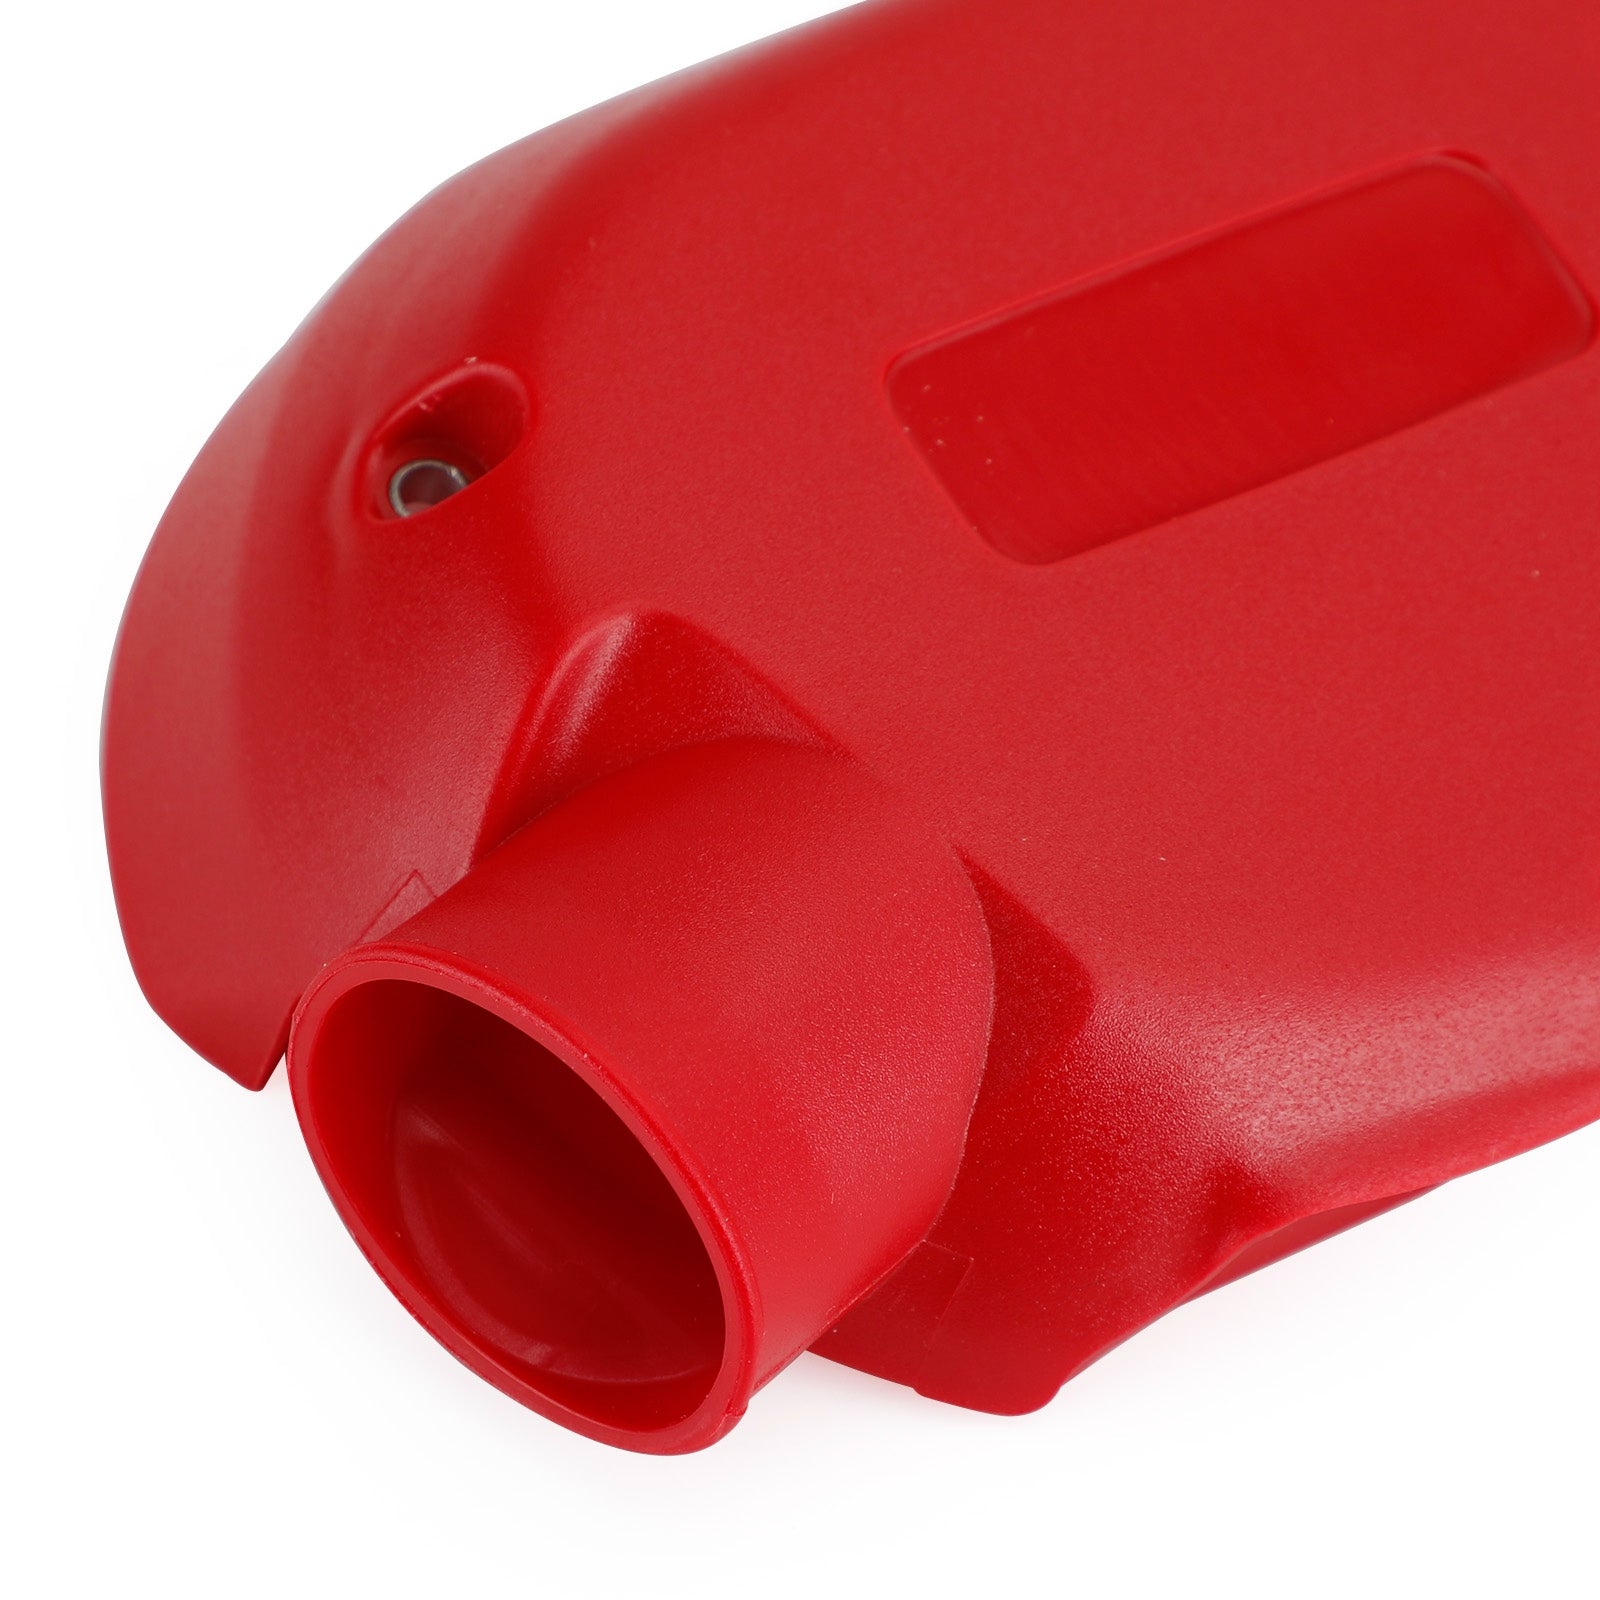 Vespa SprintPrimavera 150
Cubierta de transmisión de caja de cambios de protección de motor roja